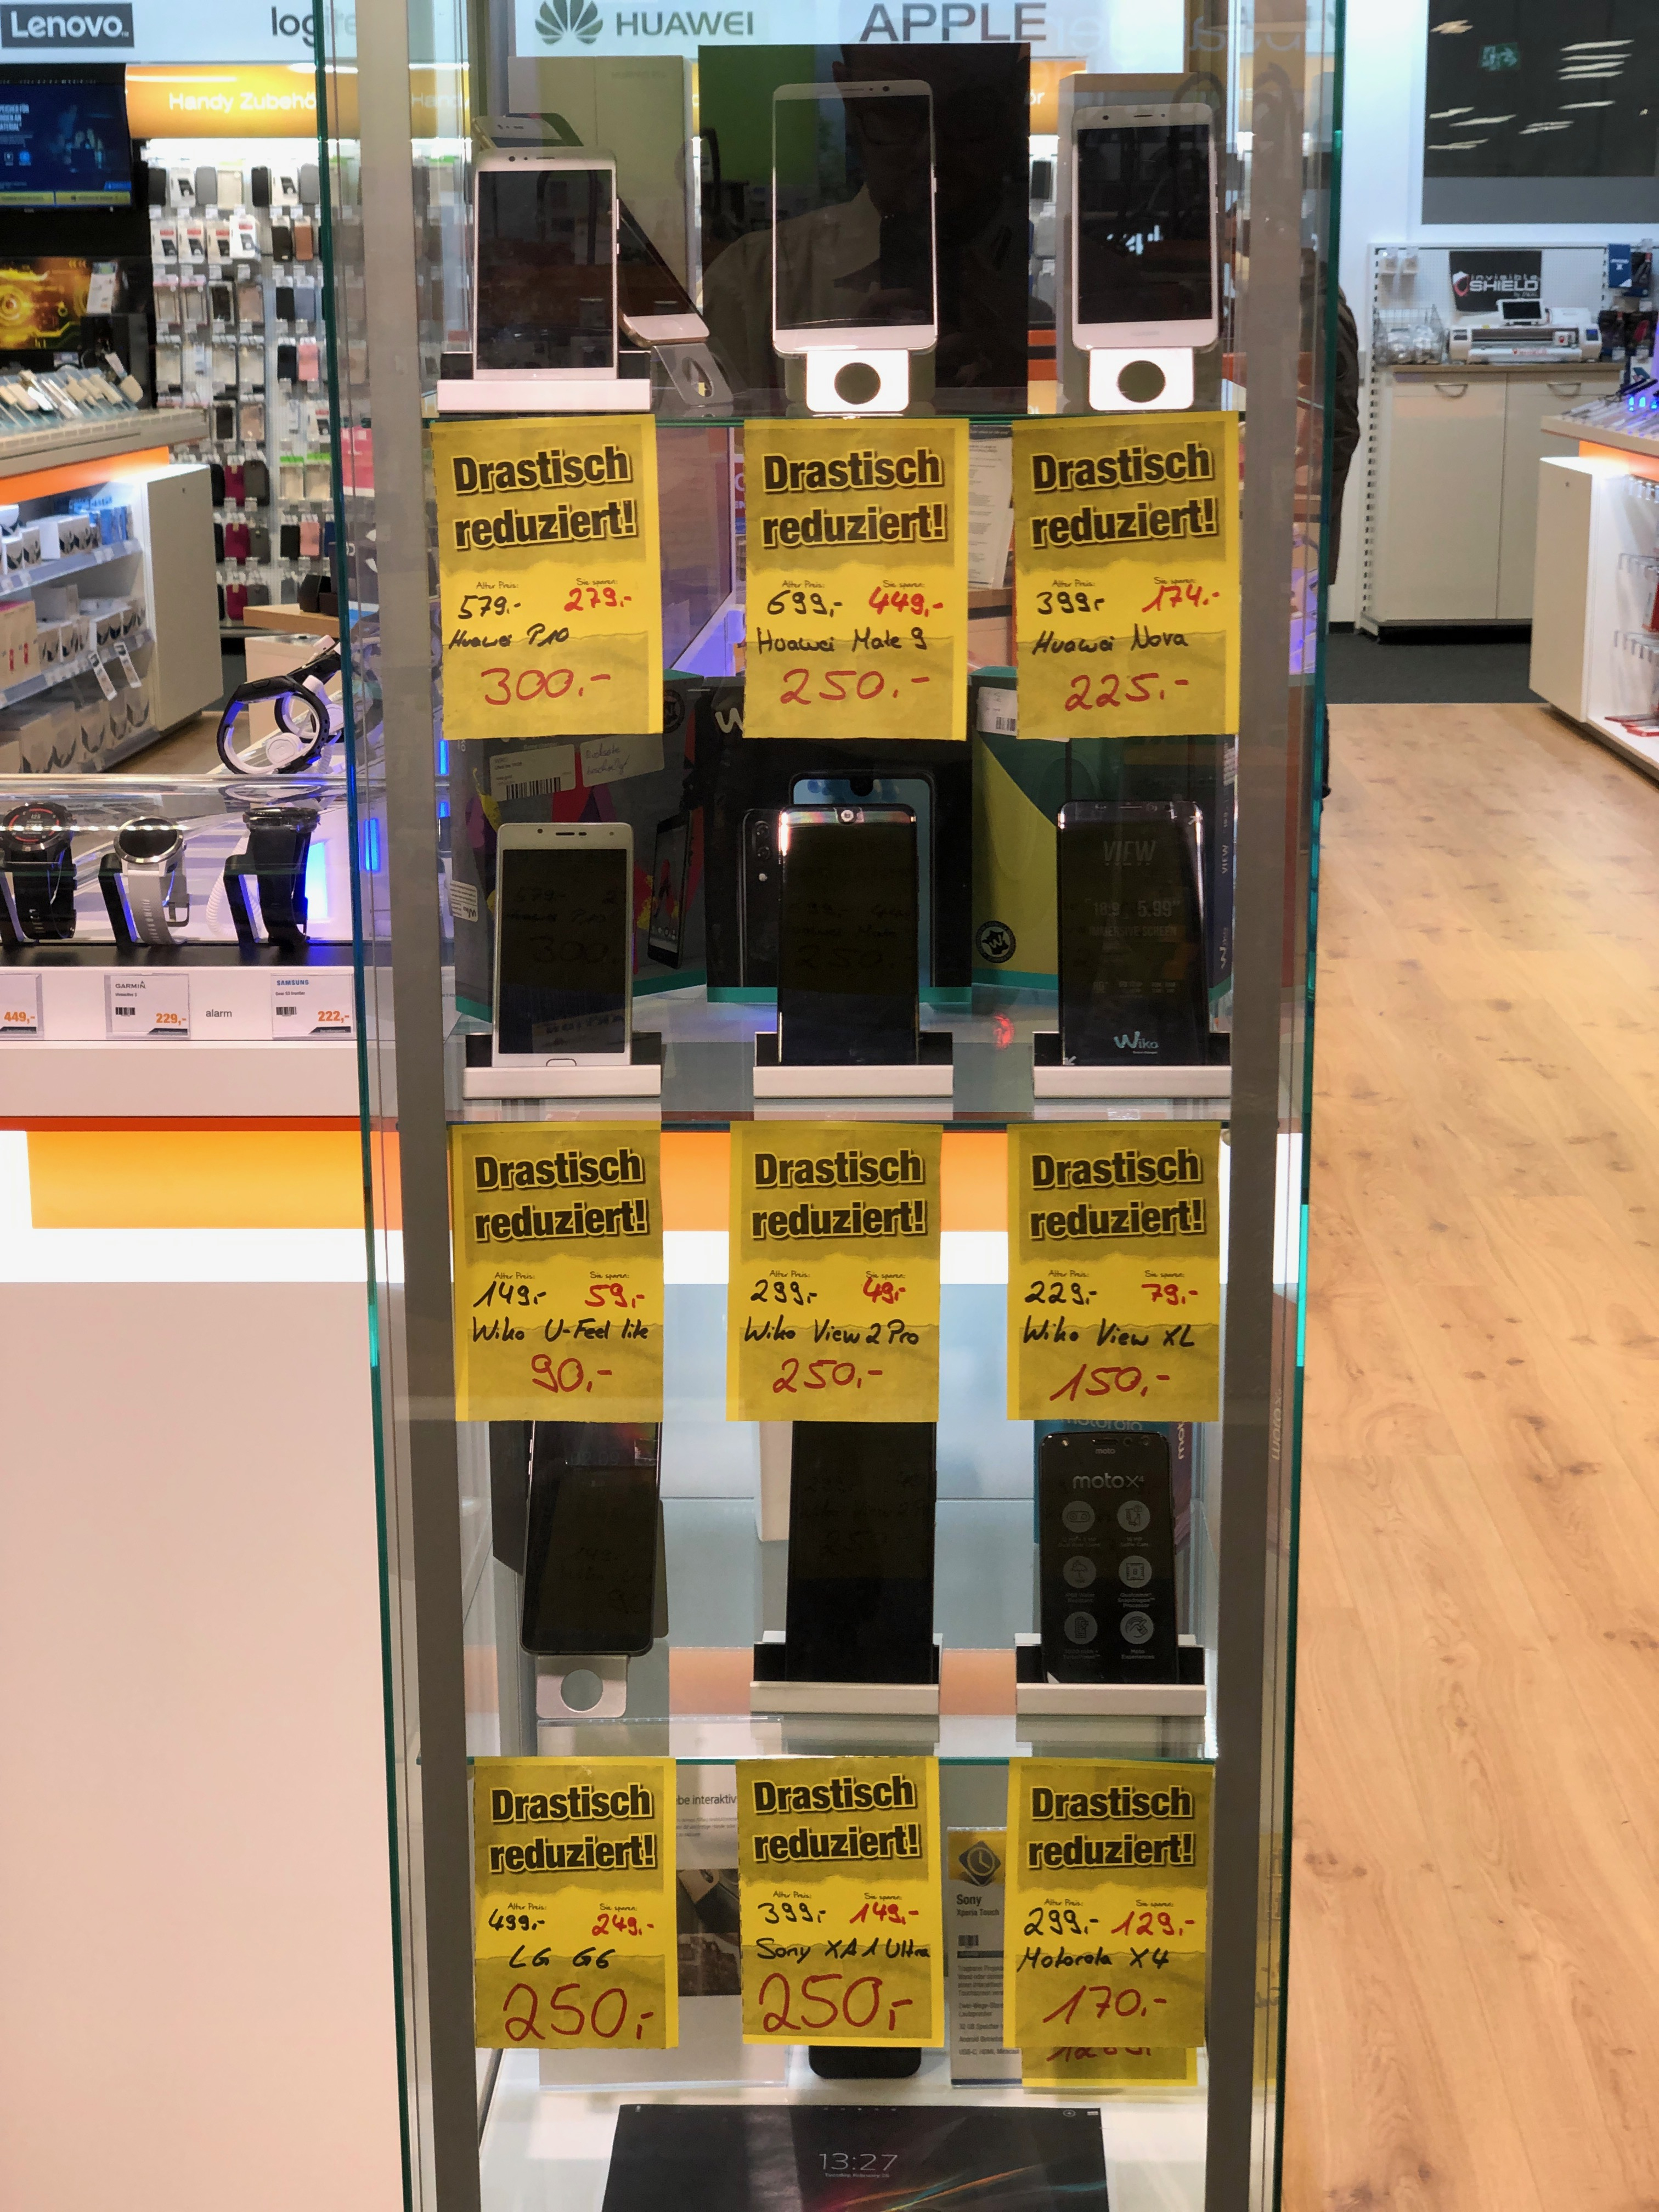 Huawei Mate 9 Für 250 Und Einige Weitere Handys Zum Sonderpreis